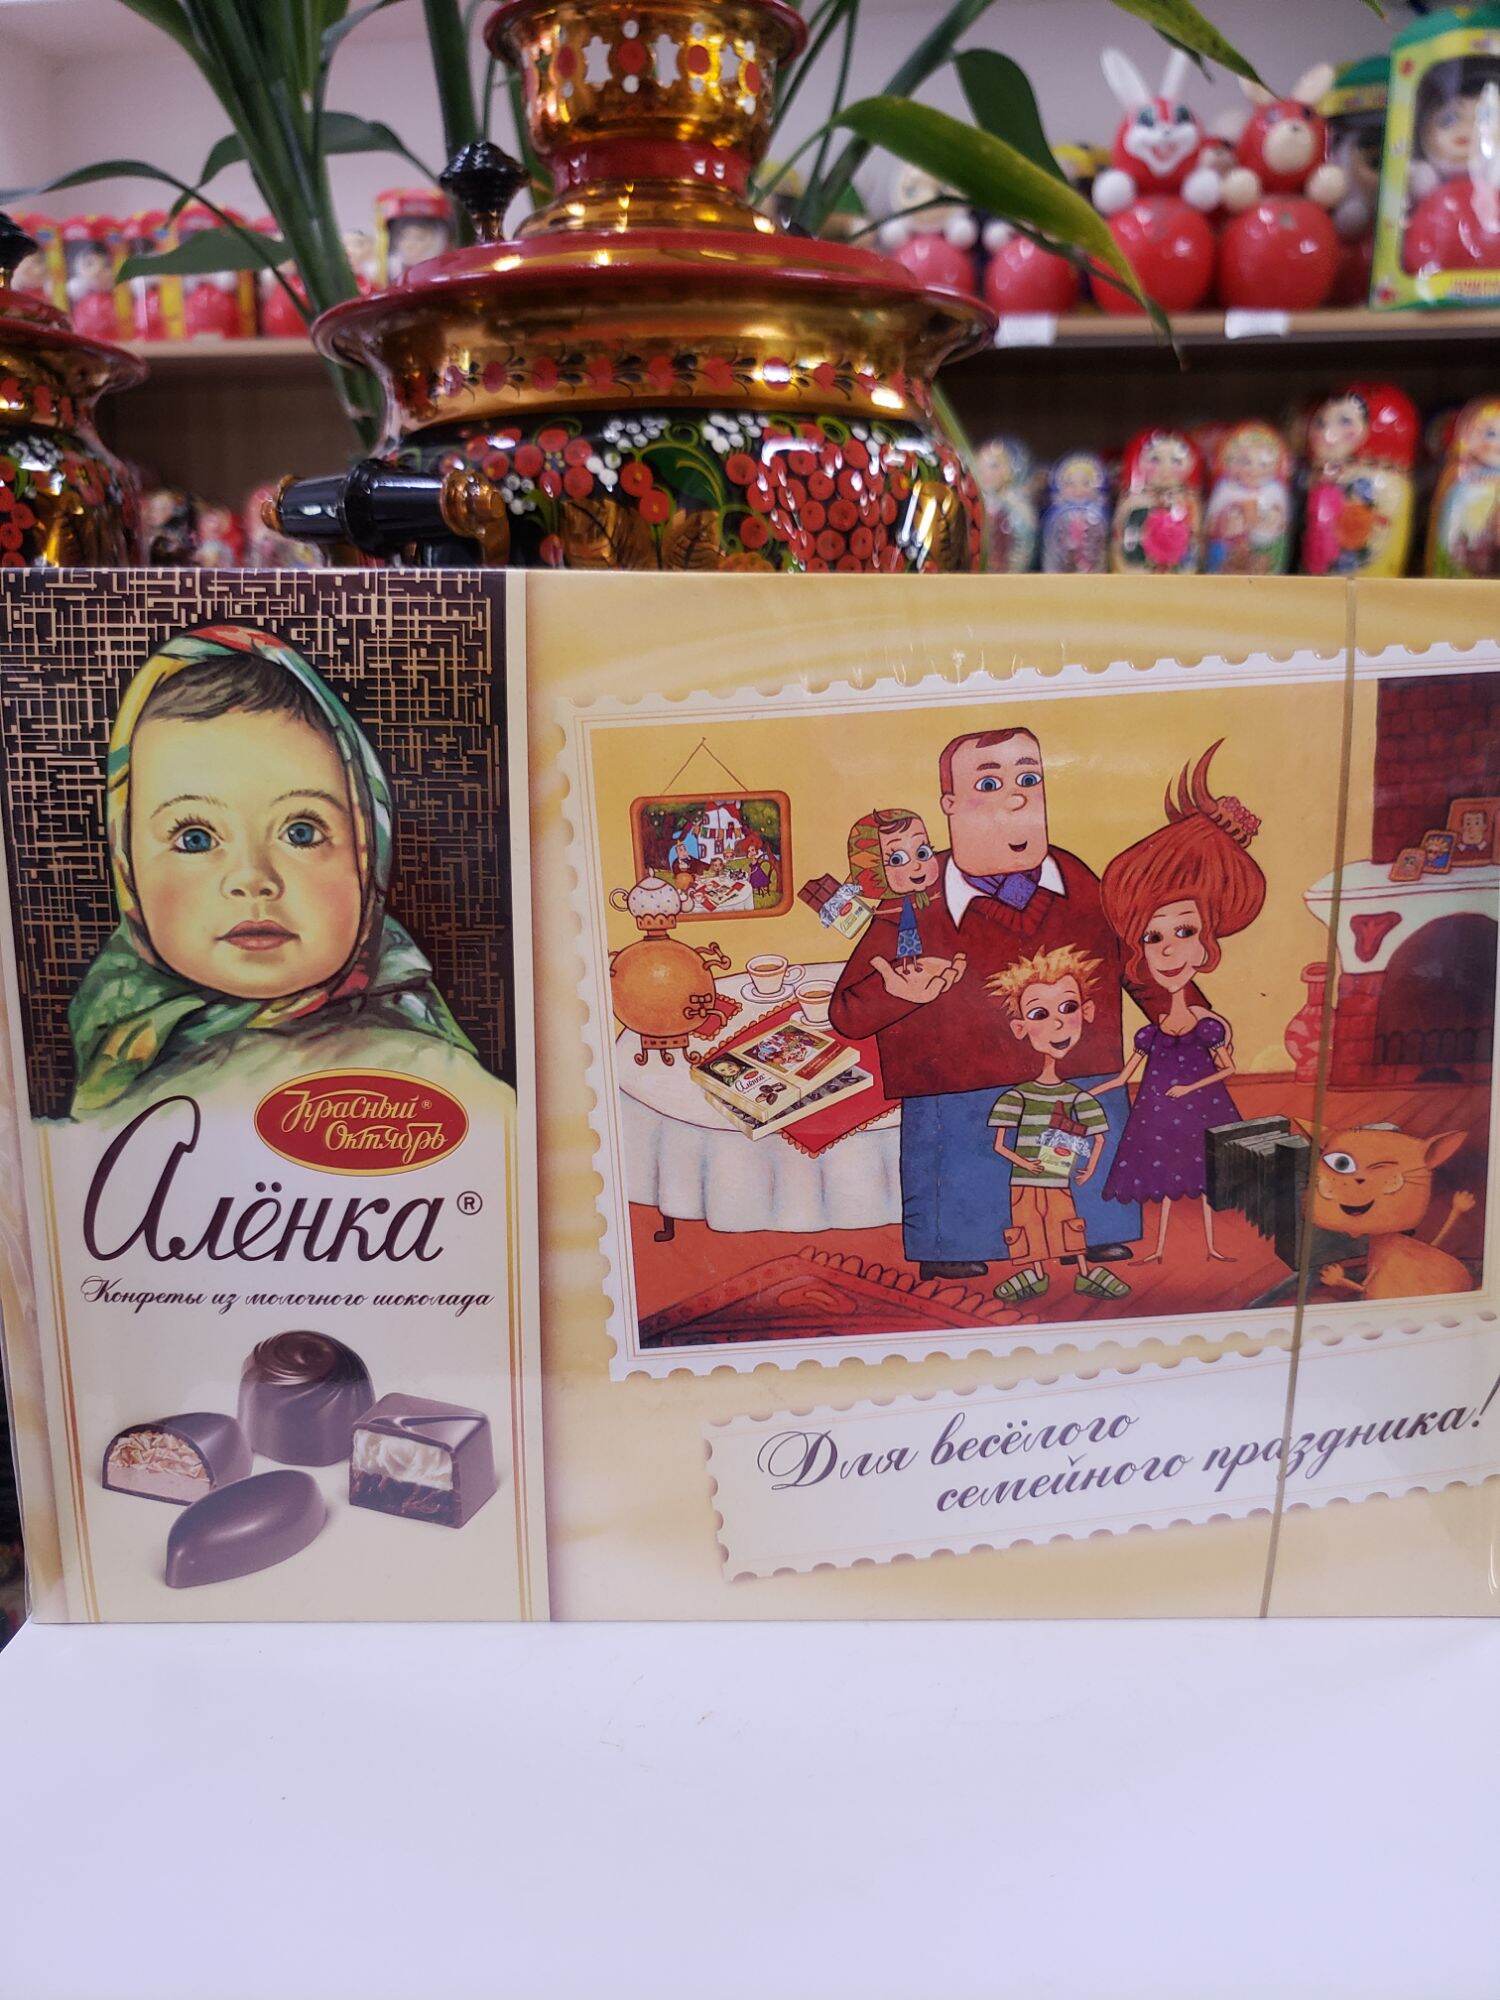 Chocolate hình em bé hộp 185g nhập khẩu Nga